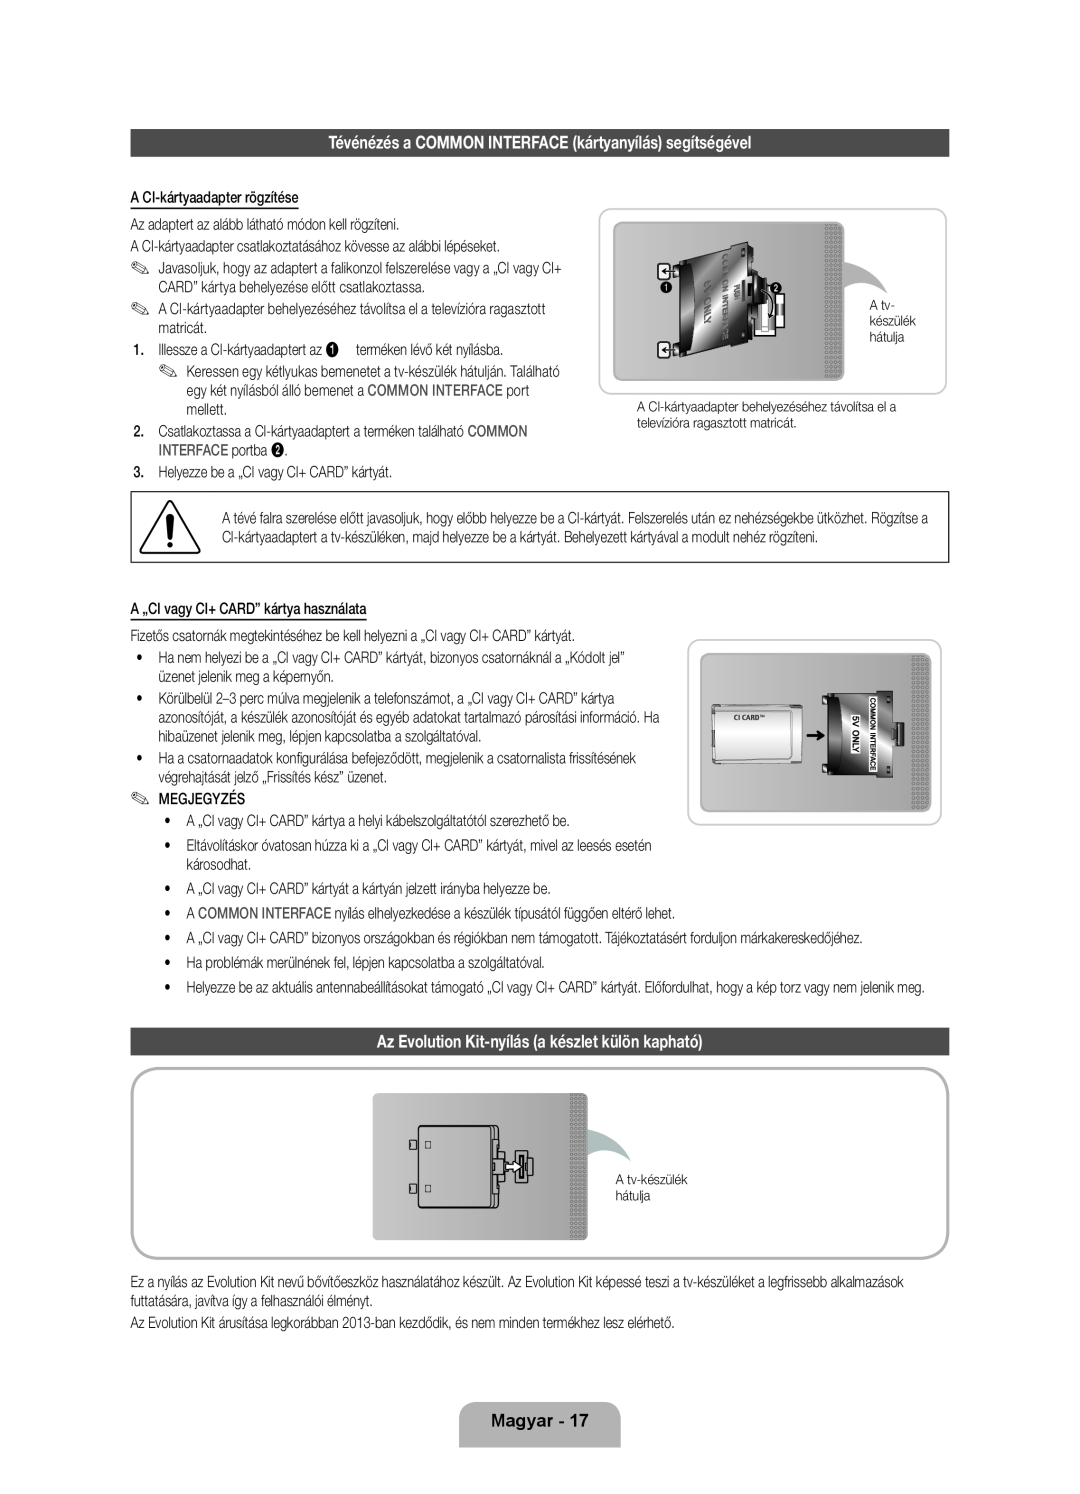 Samsung UE40ES8000SXXH manual Tévénézés a COMMON INTERFACE kártyanyílás segítségével, Magyar, A tv- készülék hátulja 